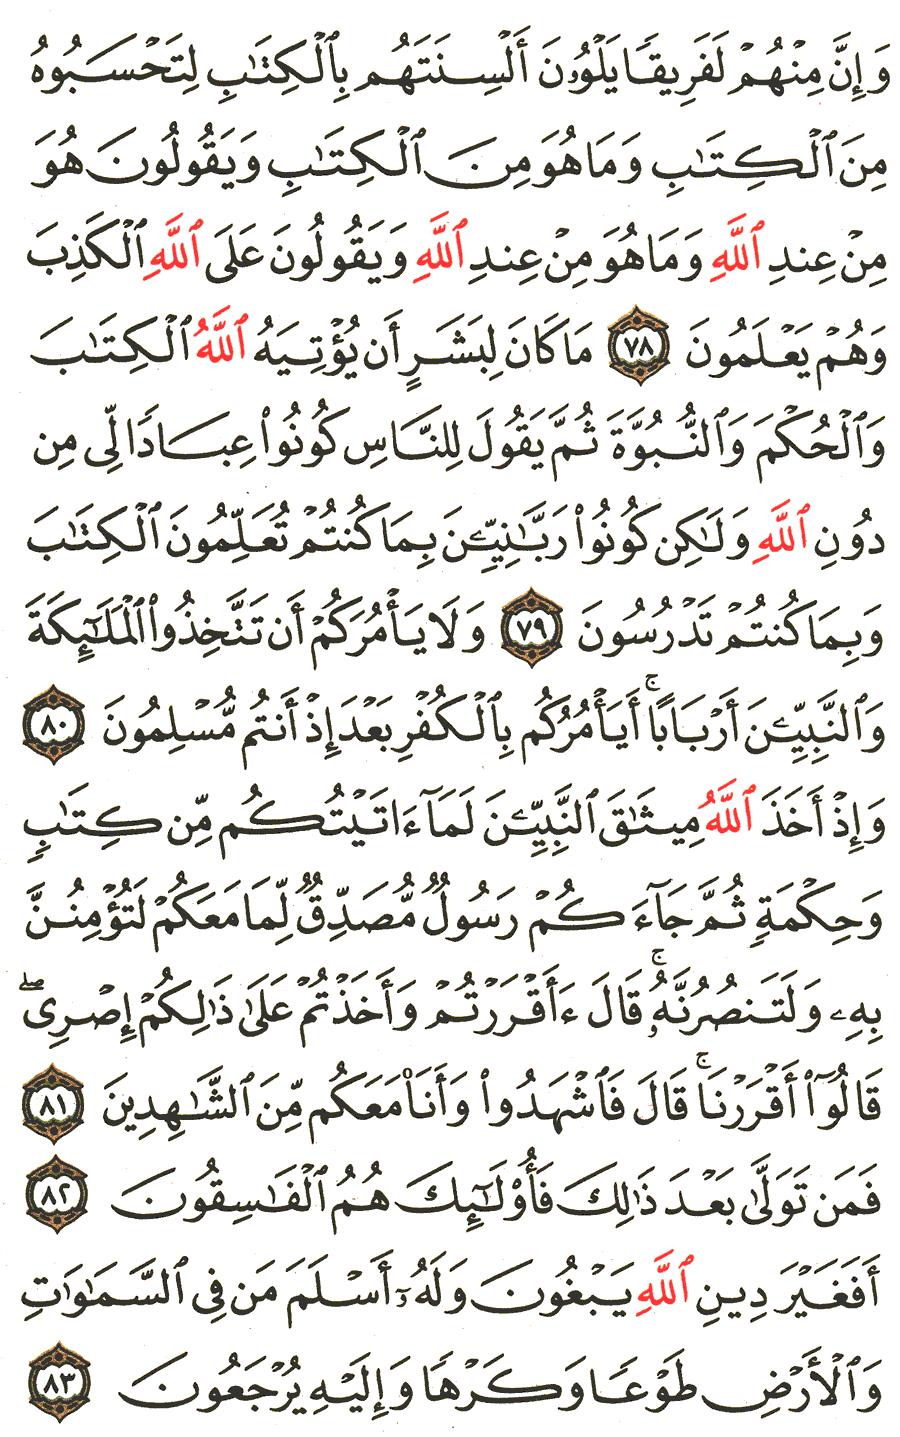 الصفحة 60 من القرآن الكريم